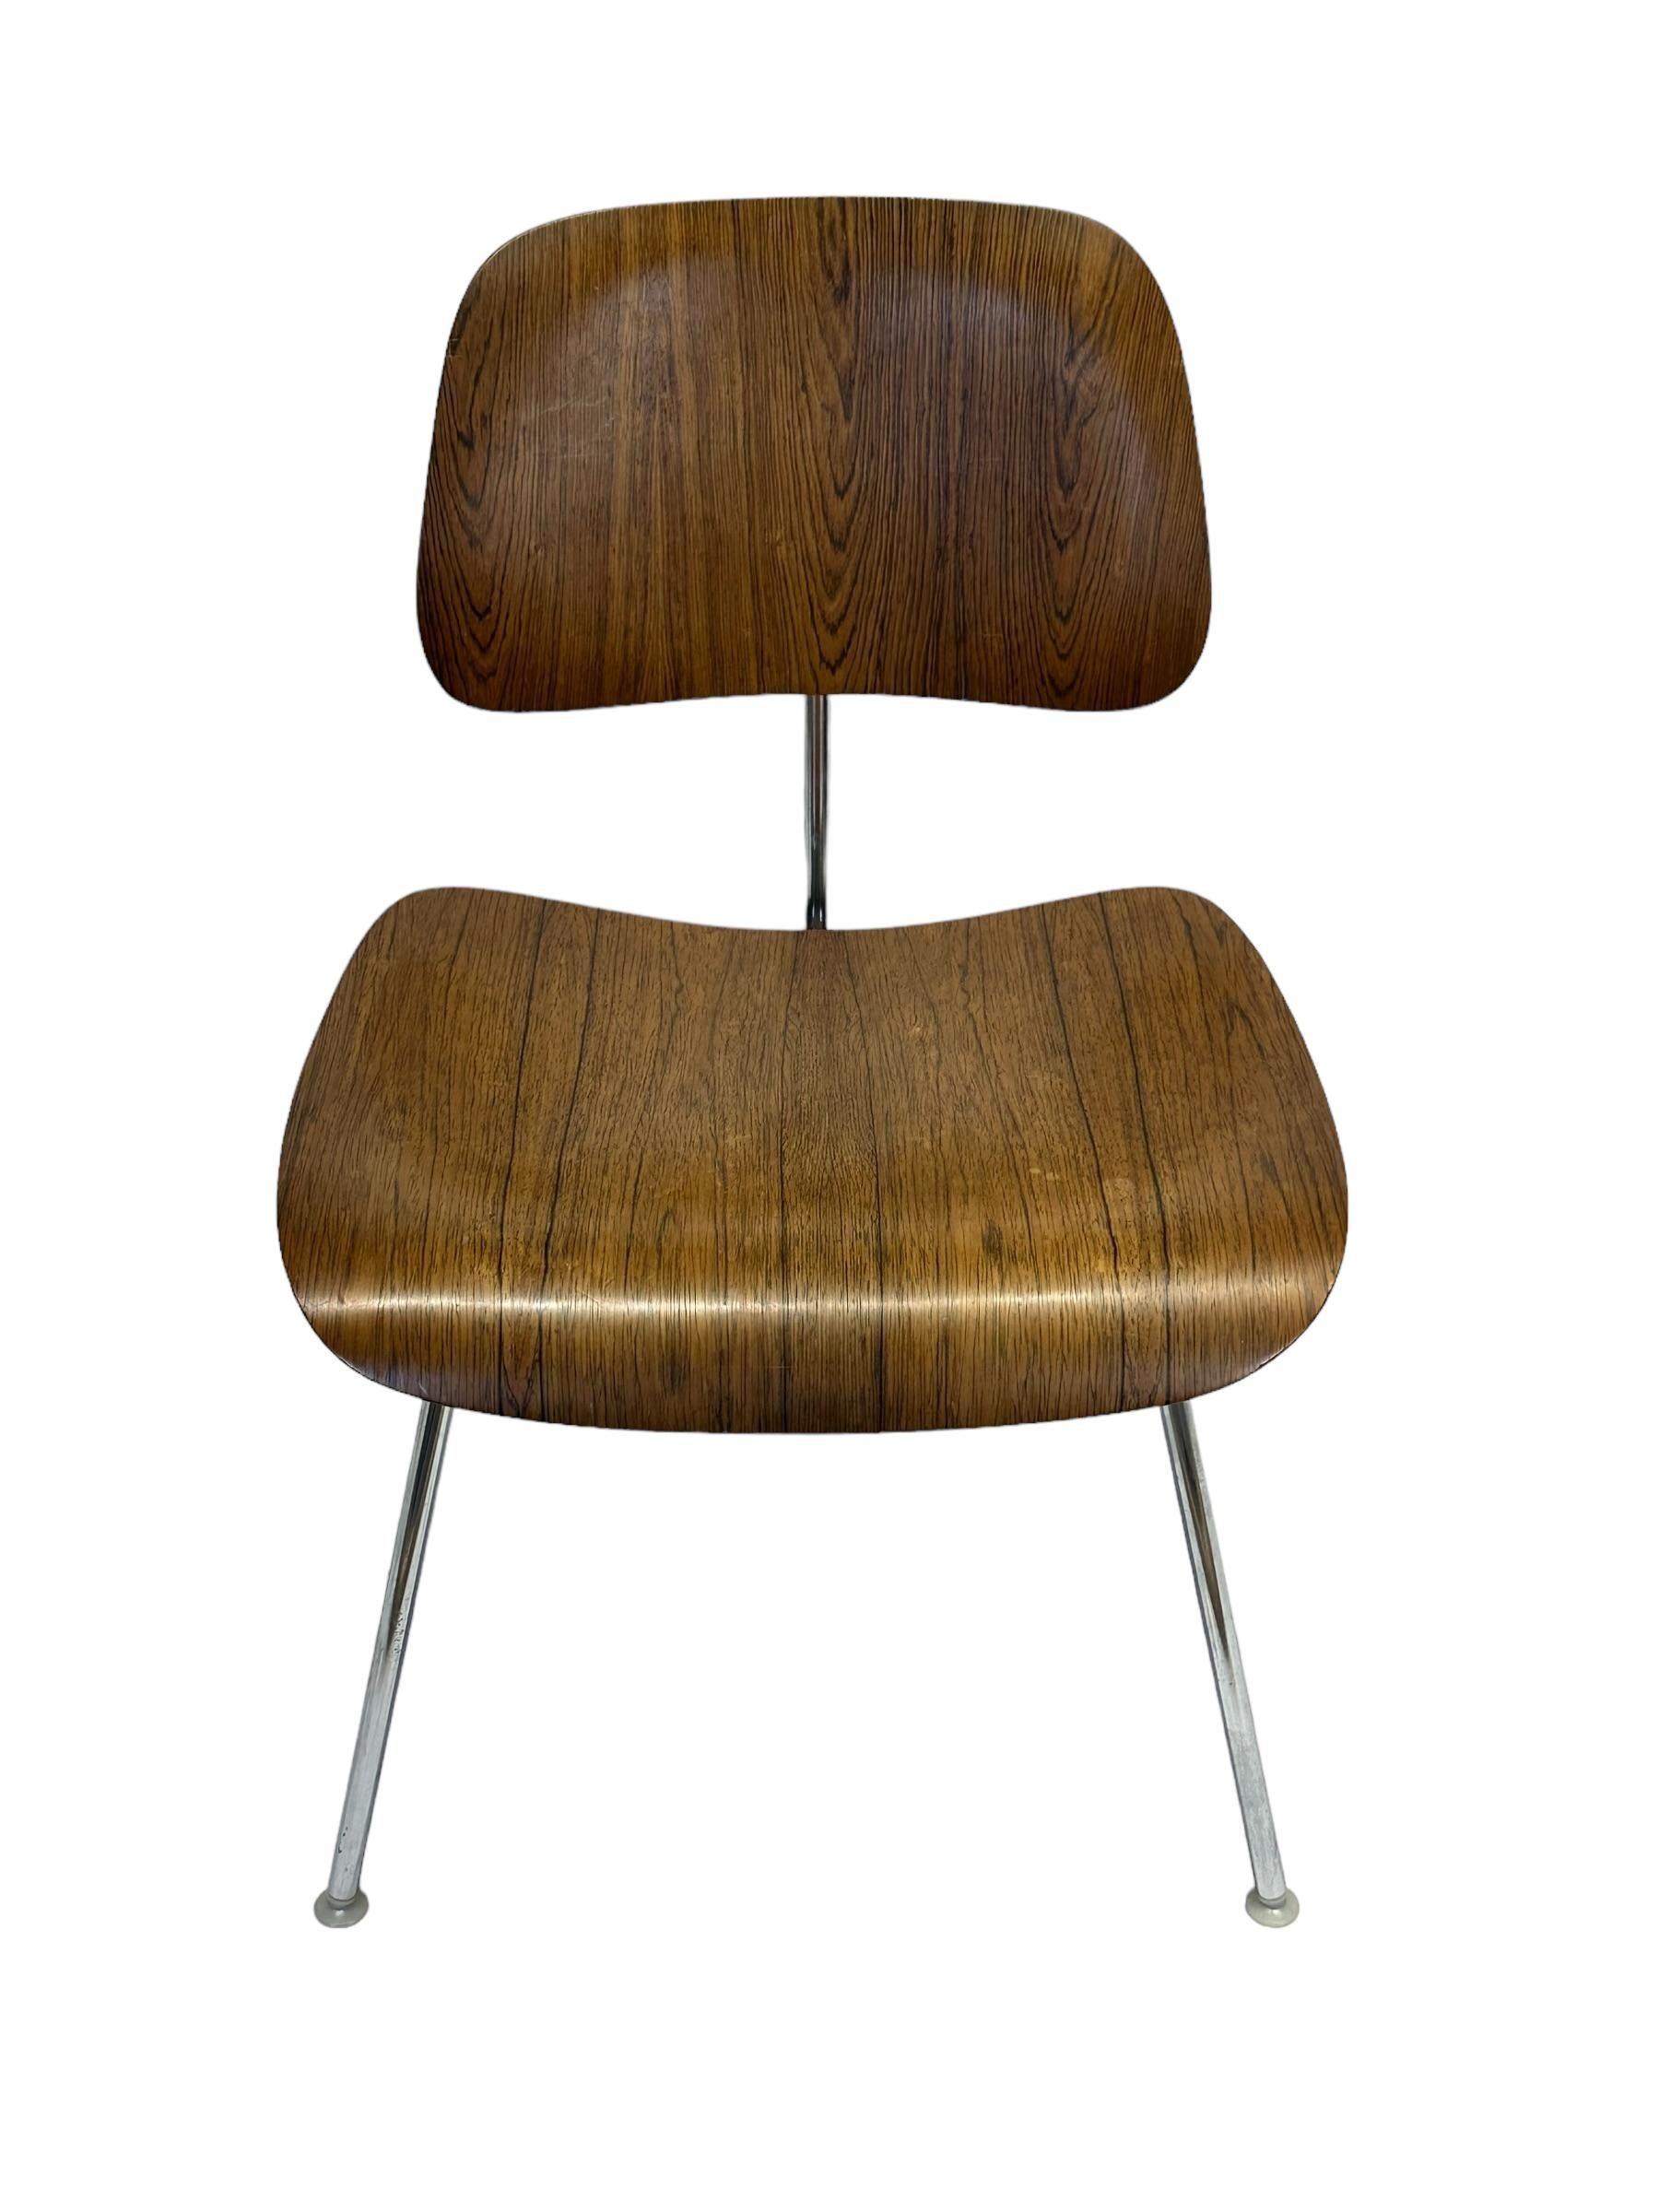 Circa late 1950s Charles and Ray Eames DCM (Dining Chair Metal frame) chair for Herman Miller. Exécuté en acier chromé et en palissandre brésilien. Il s'agit d'une finition sur commande et elle est produite en beaucoup moins de quantités que les